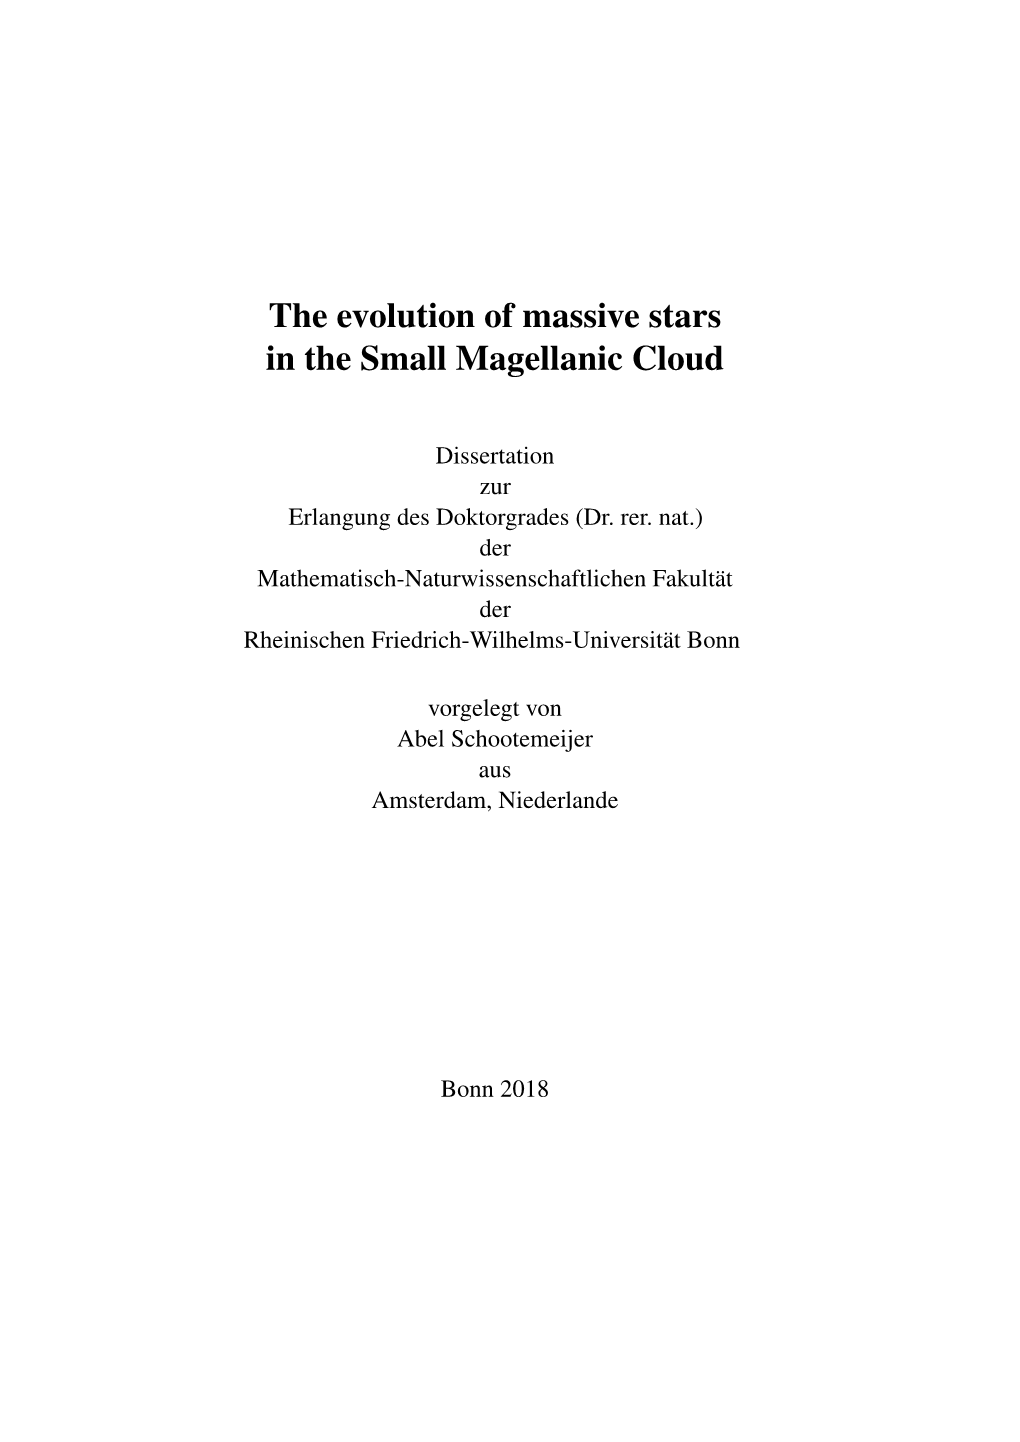 The Evolution of Massive Stars in the Small Magellanic Cloud